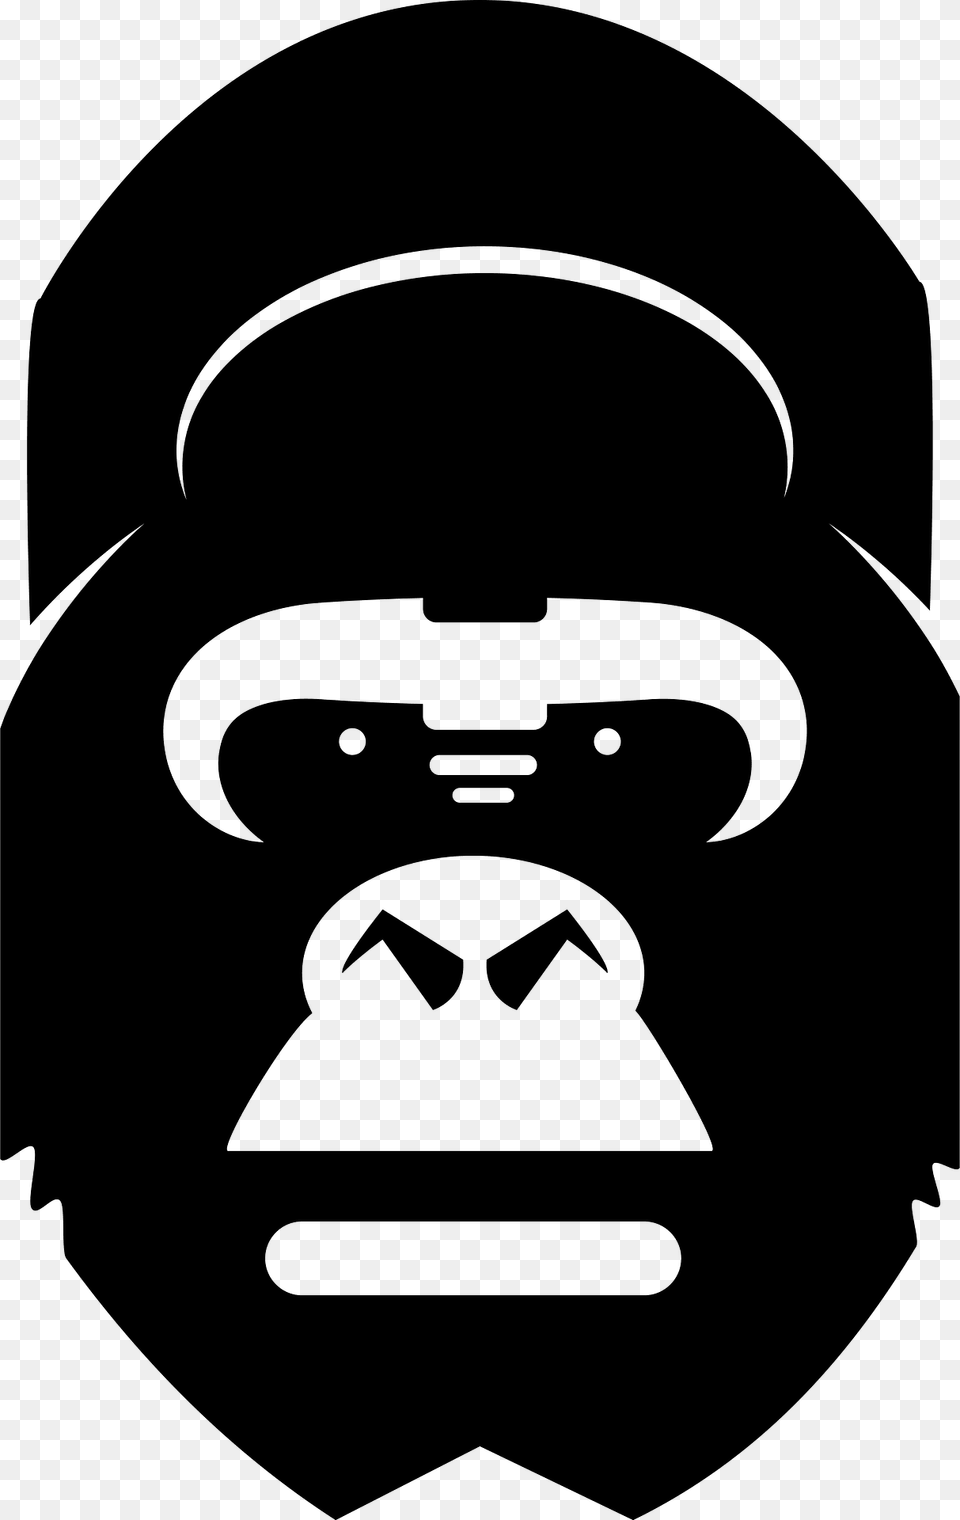 Gorilla Head Clipart, Animal, Ape, Mammal, Stencil Png Image